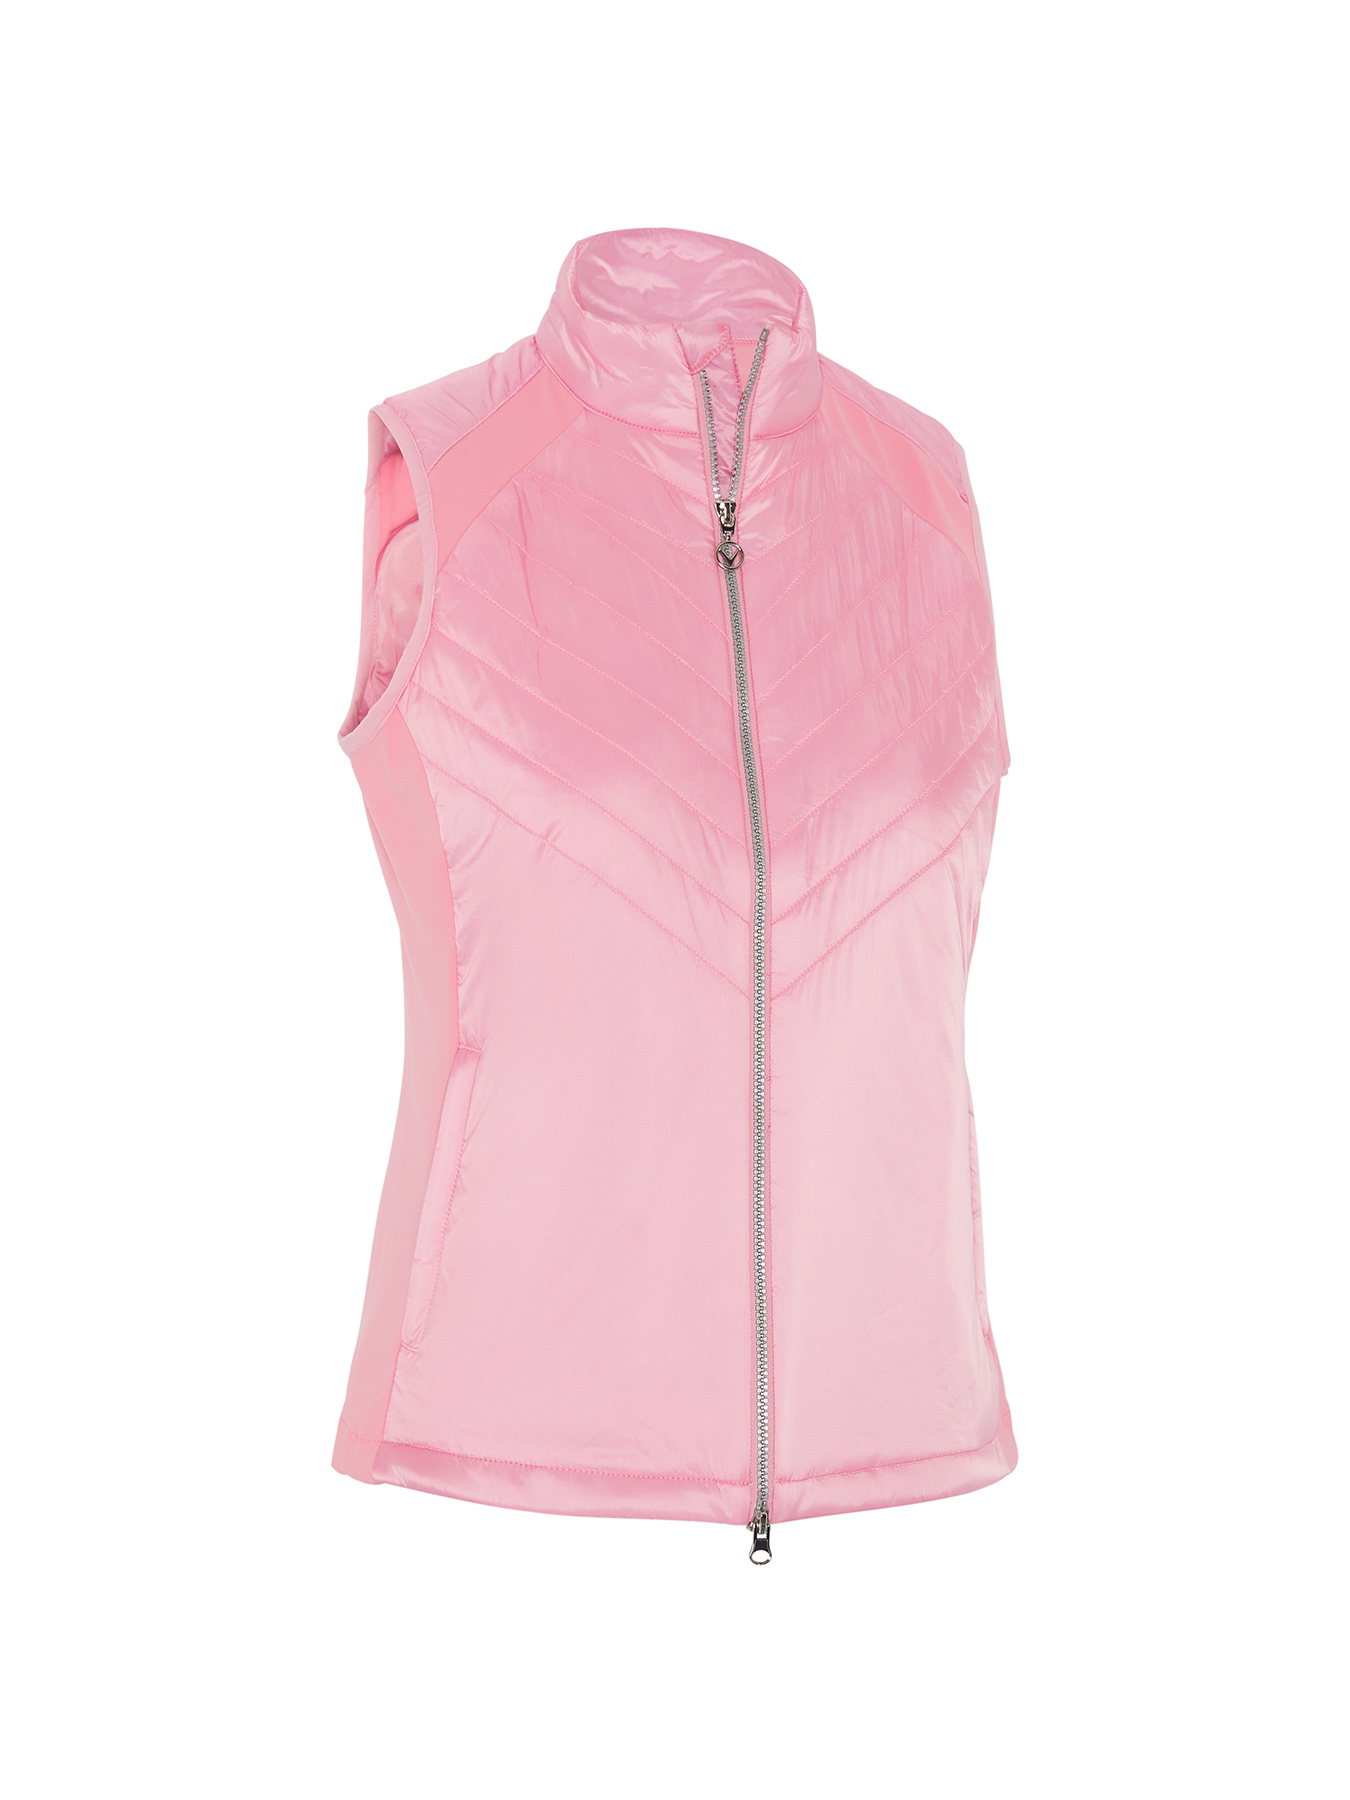 Callaway Chev Primaloft dámská golfová vesta, světle růžová, vel. XL